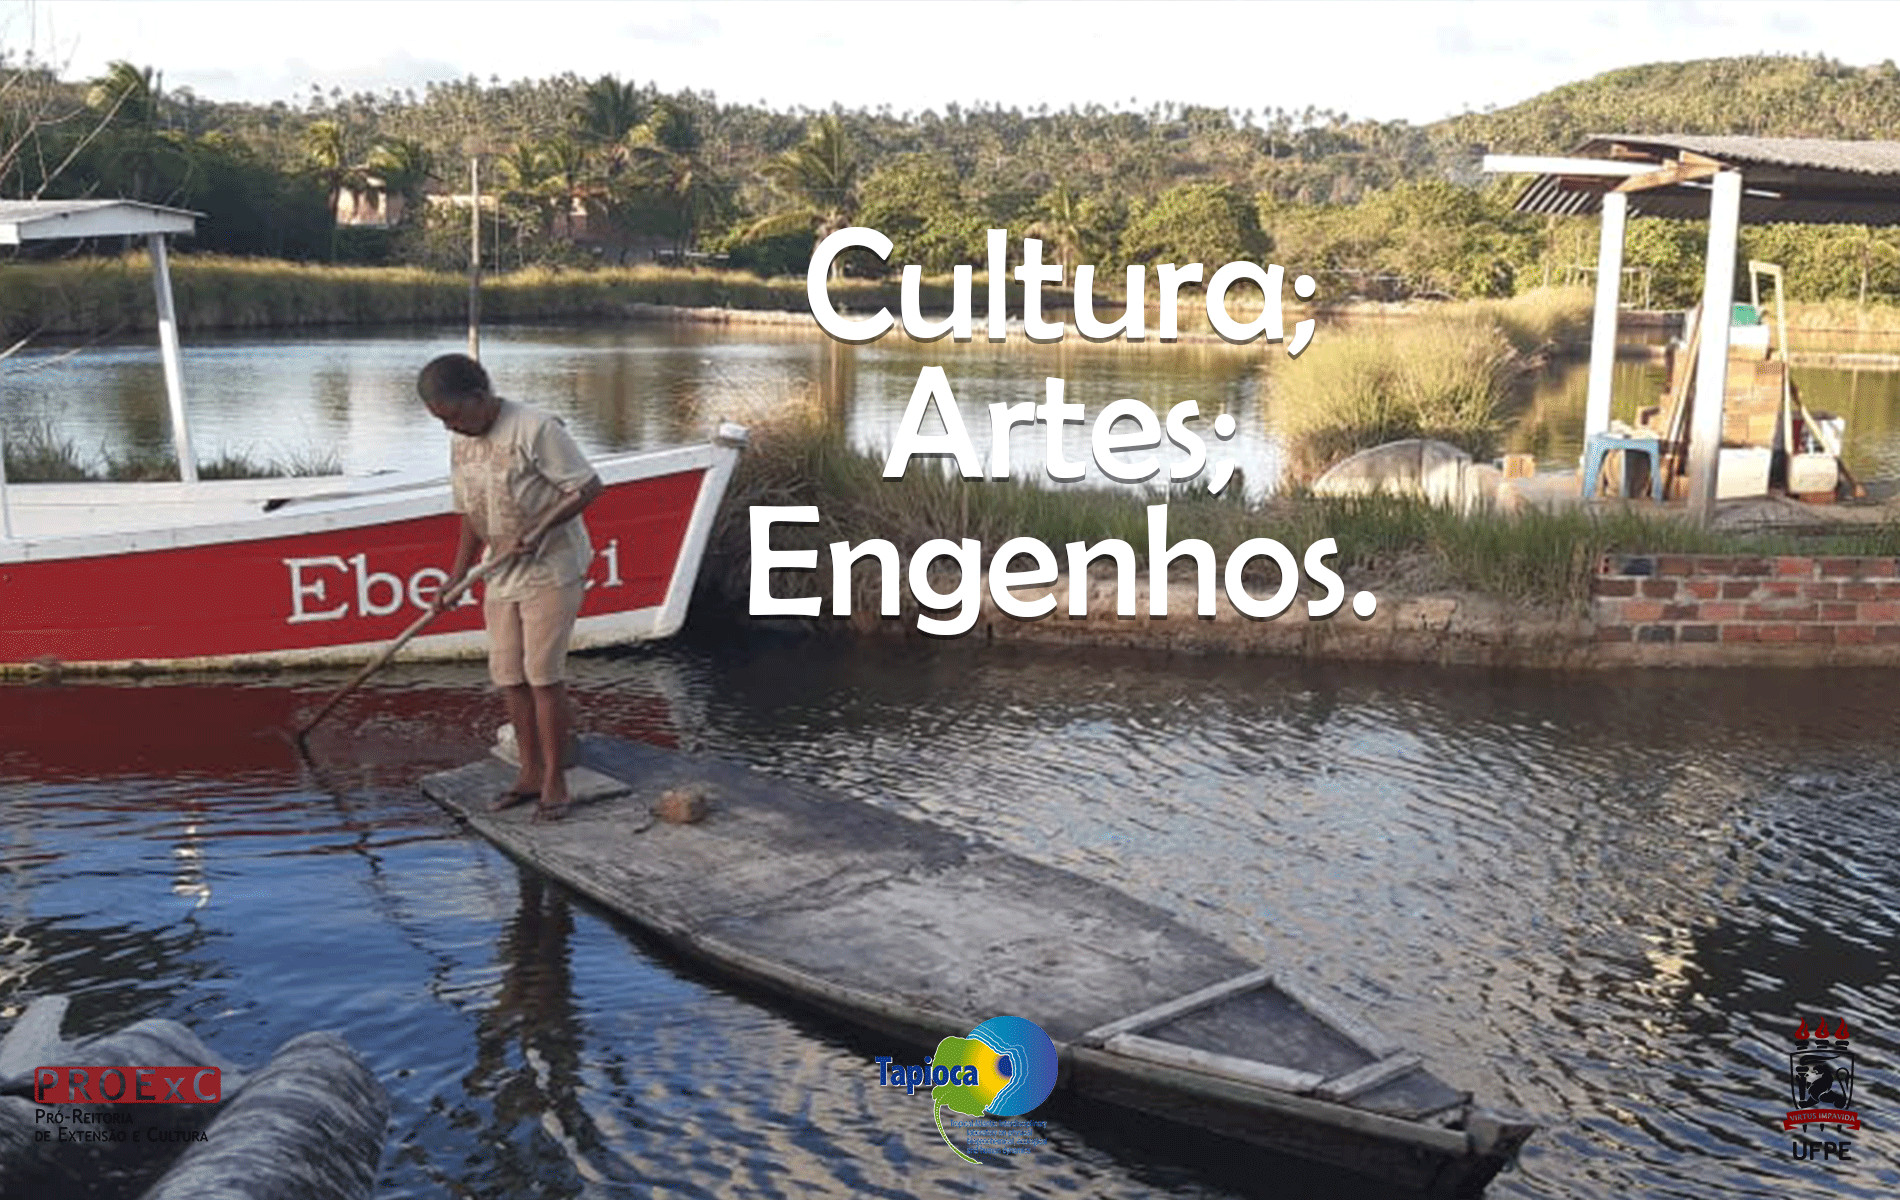 Rio Formoso, Mata Sul de Pernambuco: Cultura, artes e engenho